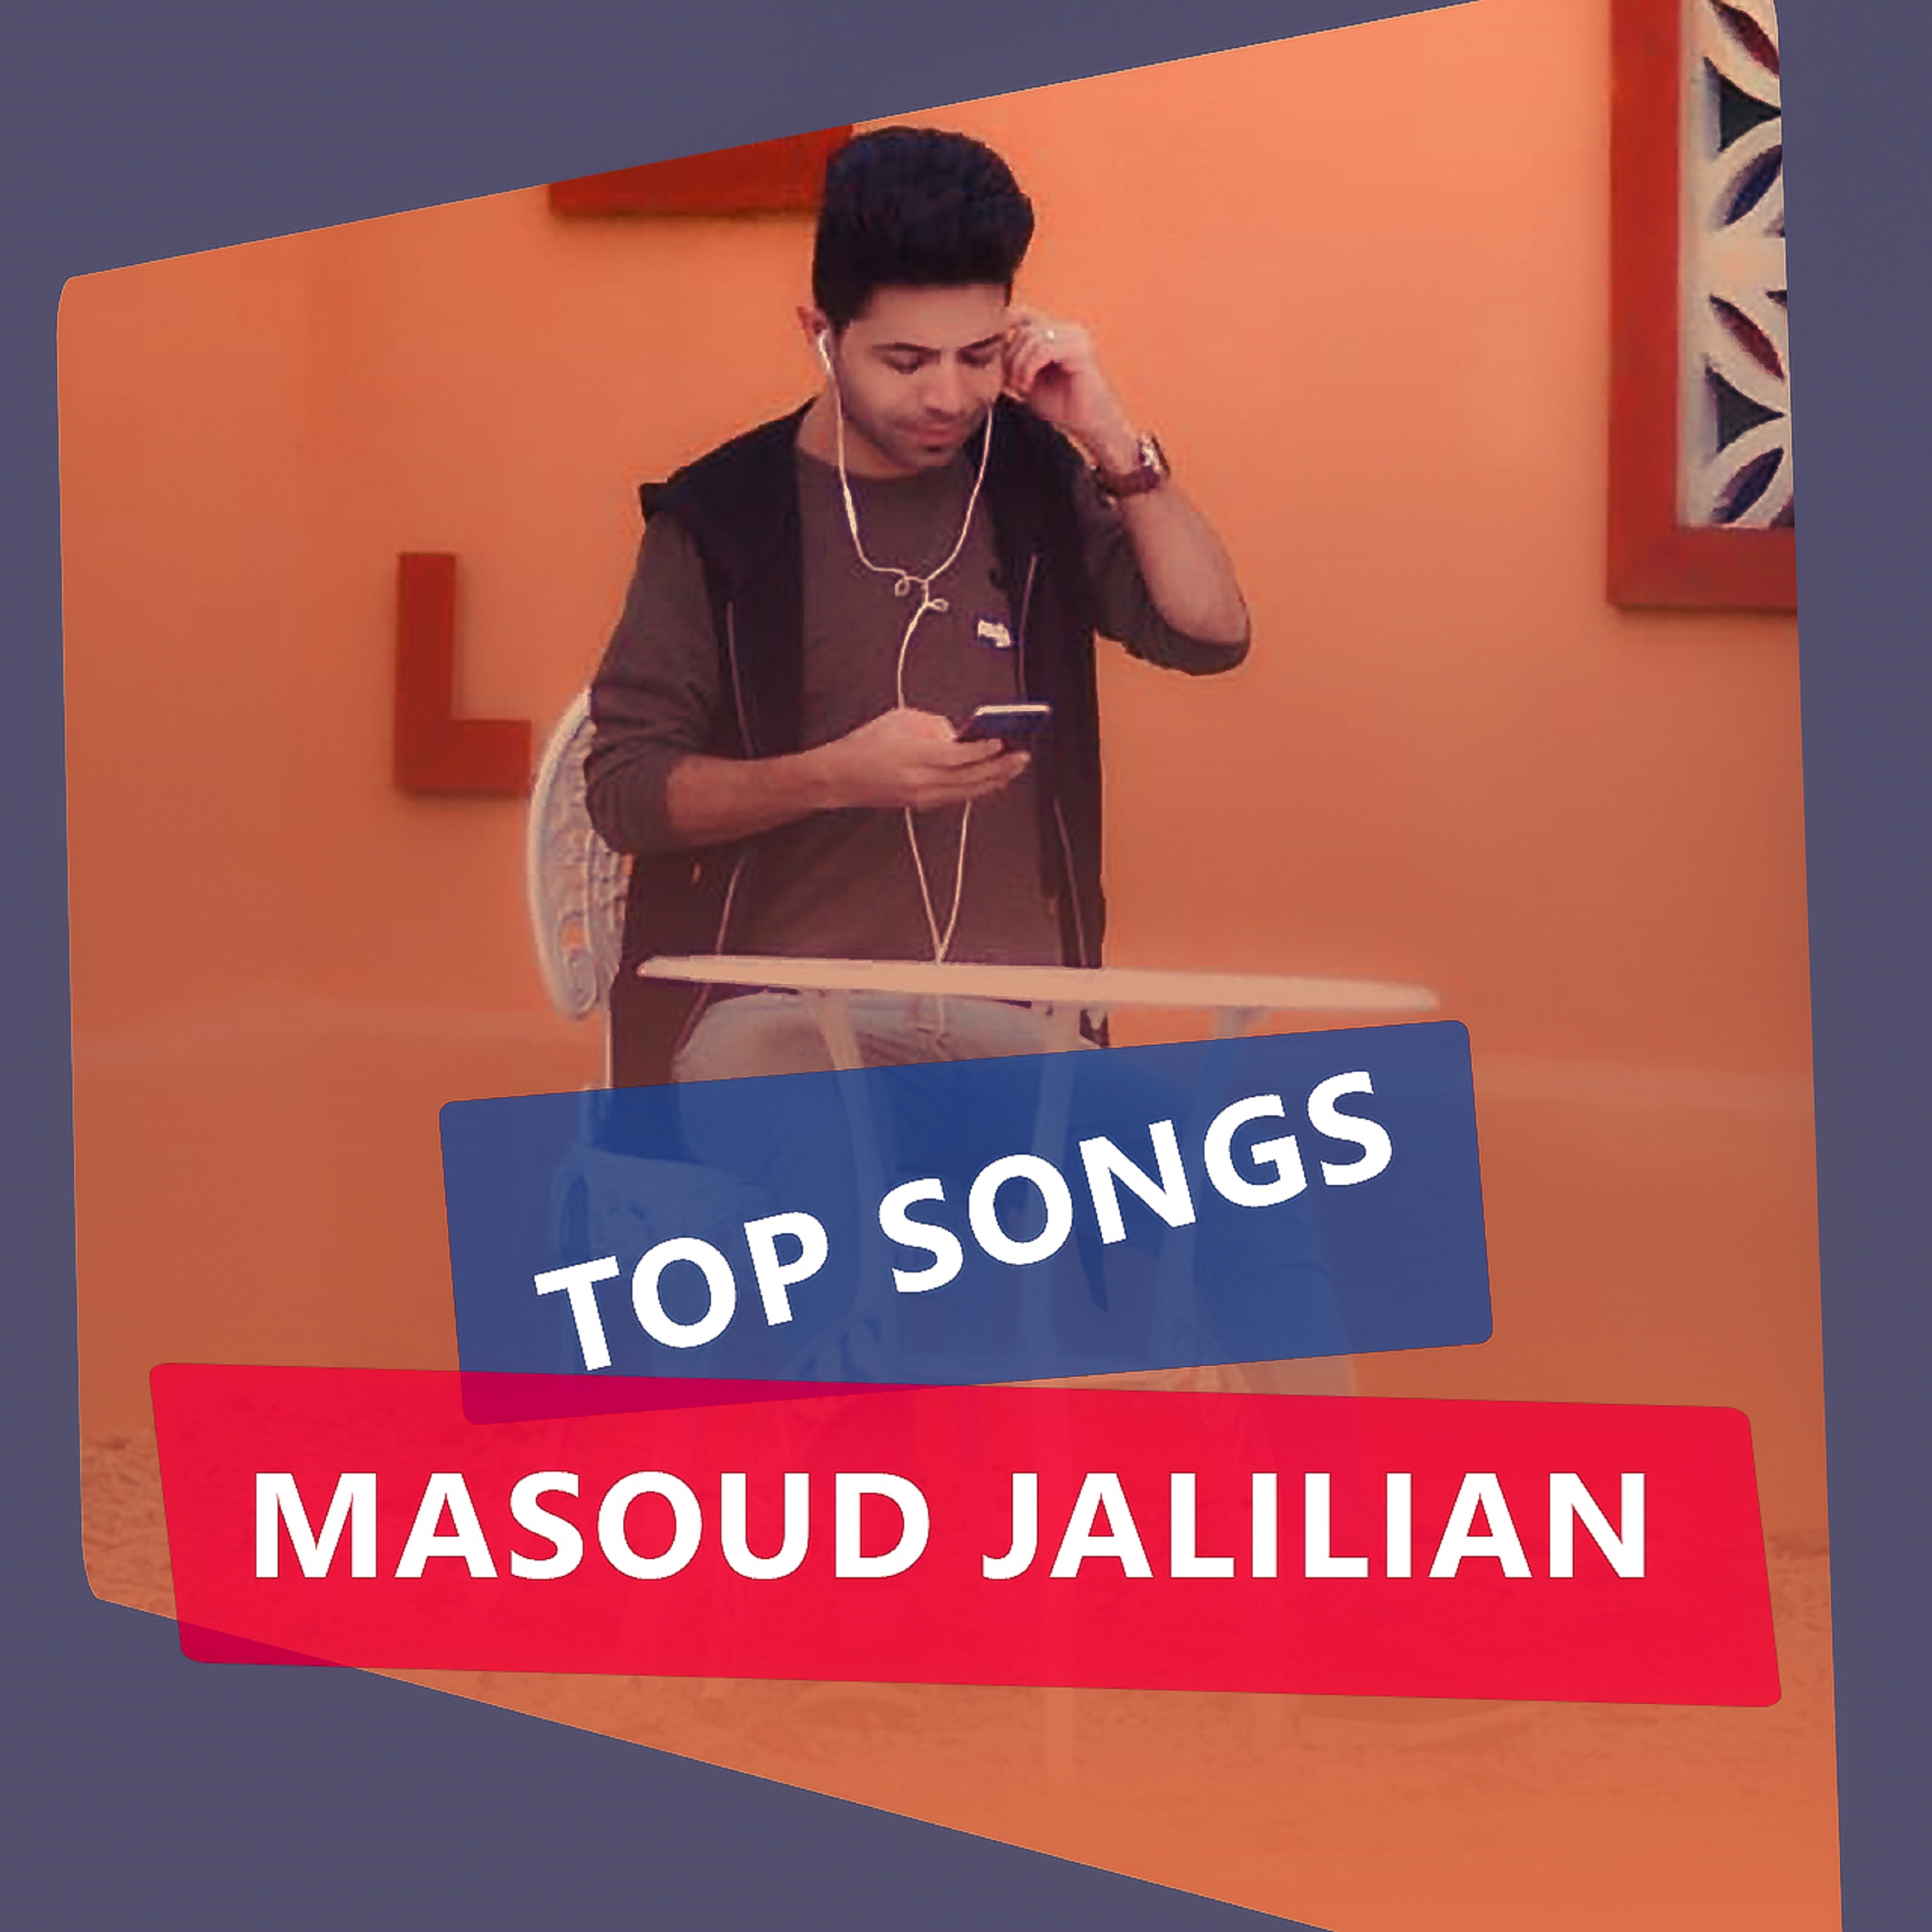  دانلود آهنگ جدید مسعود جلیلیان - بهانه | Download New Music By Masoud Jalilian - Bahaneh